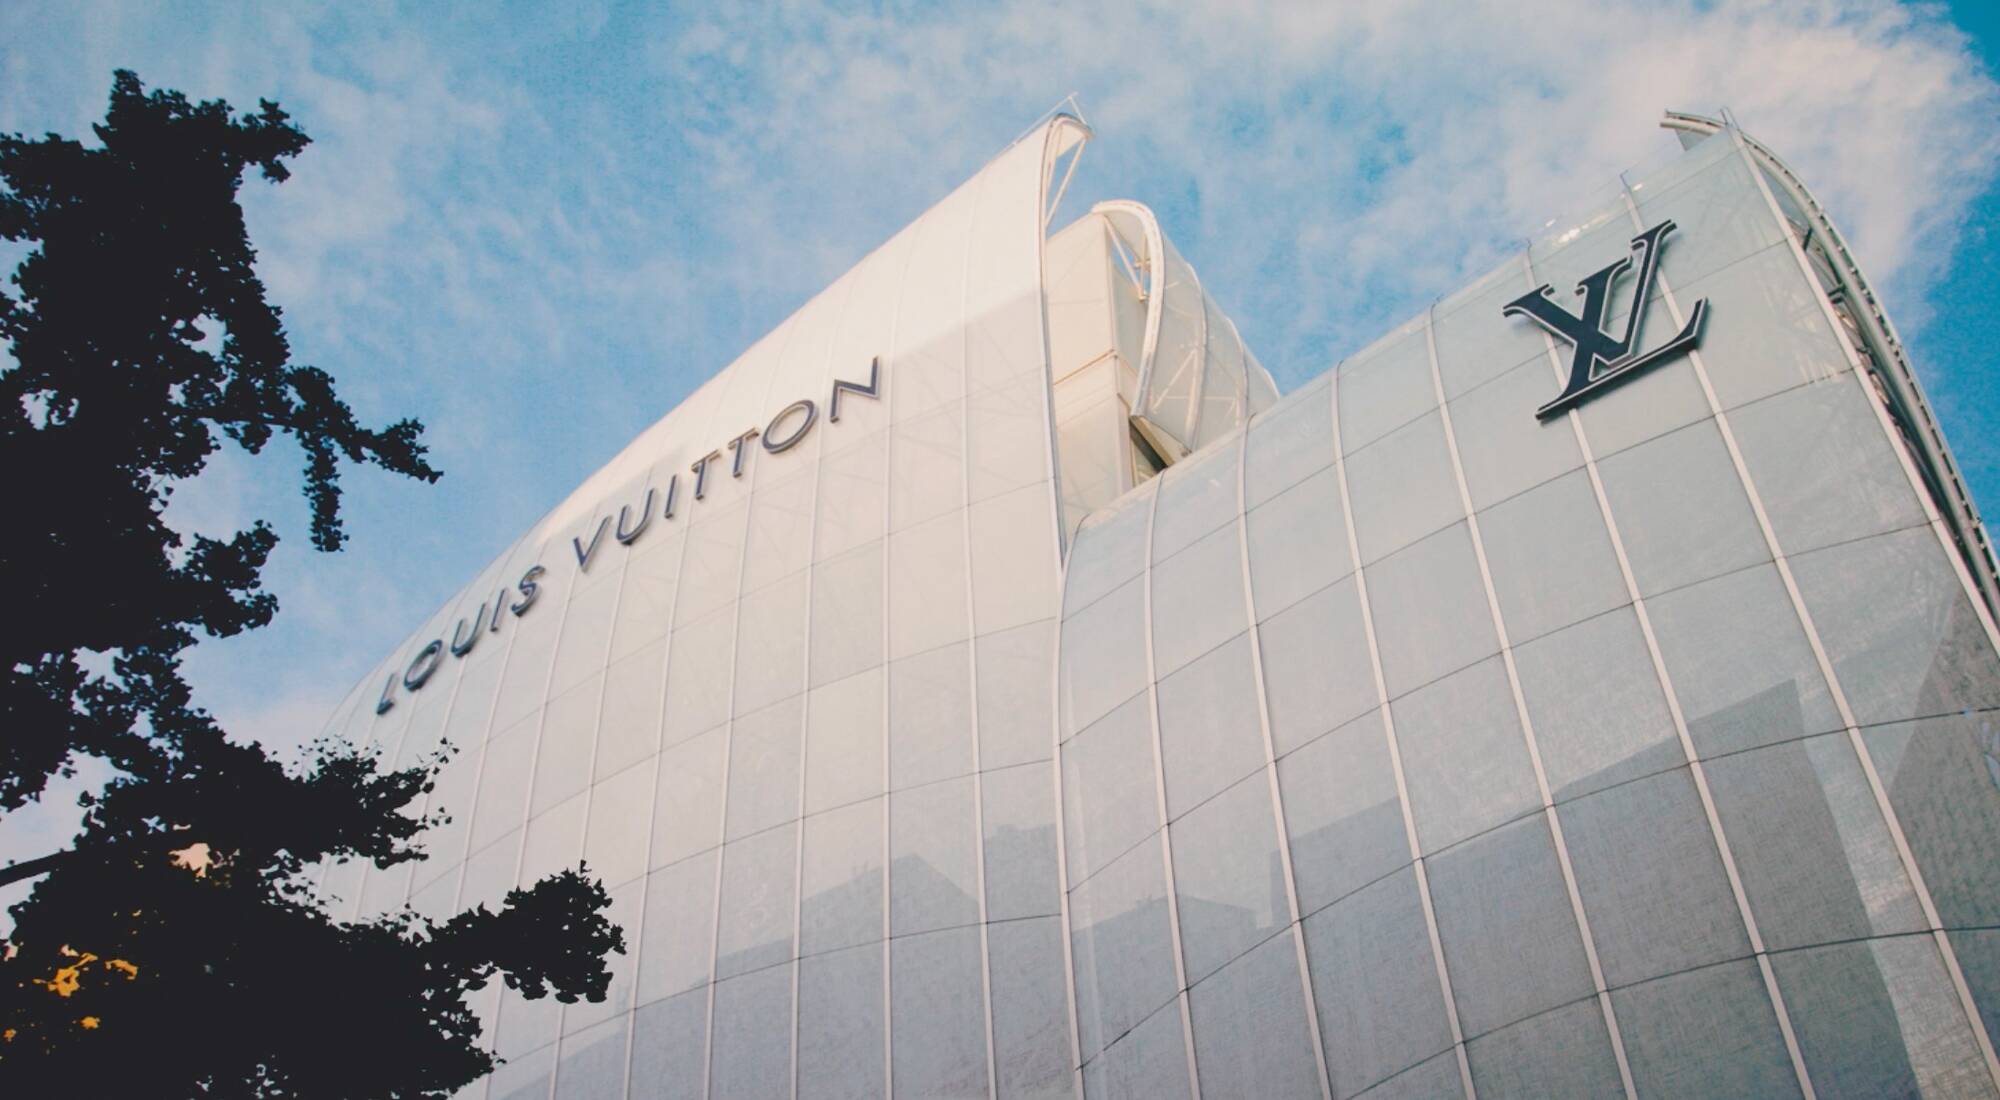 Louis Vuitton Maison Osaka Midosuji store, Japan